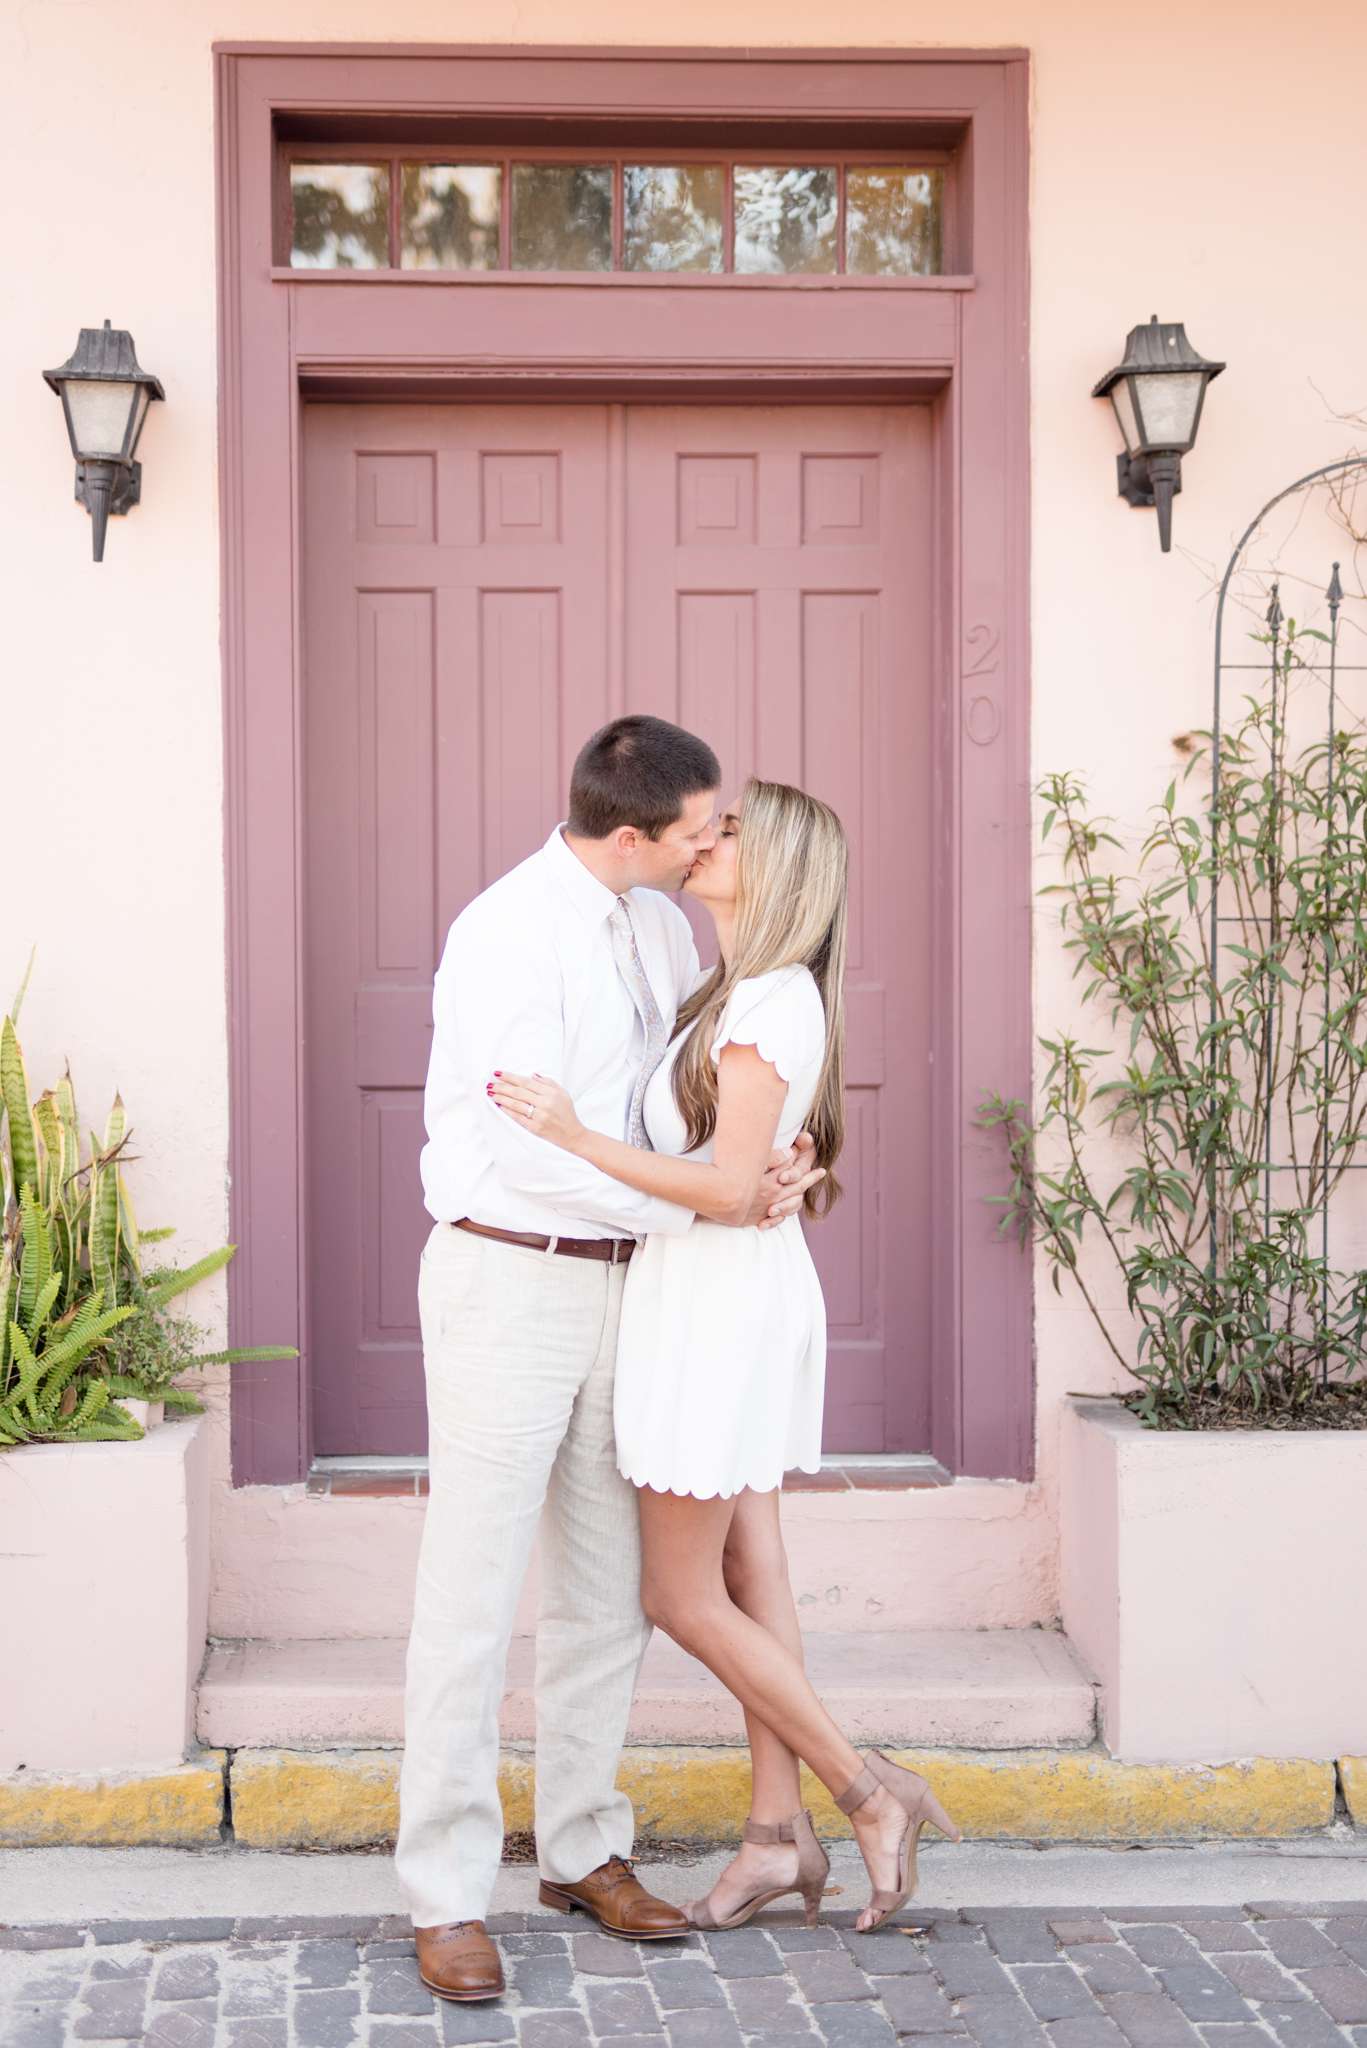 Married couple kisses in front of purple door.